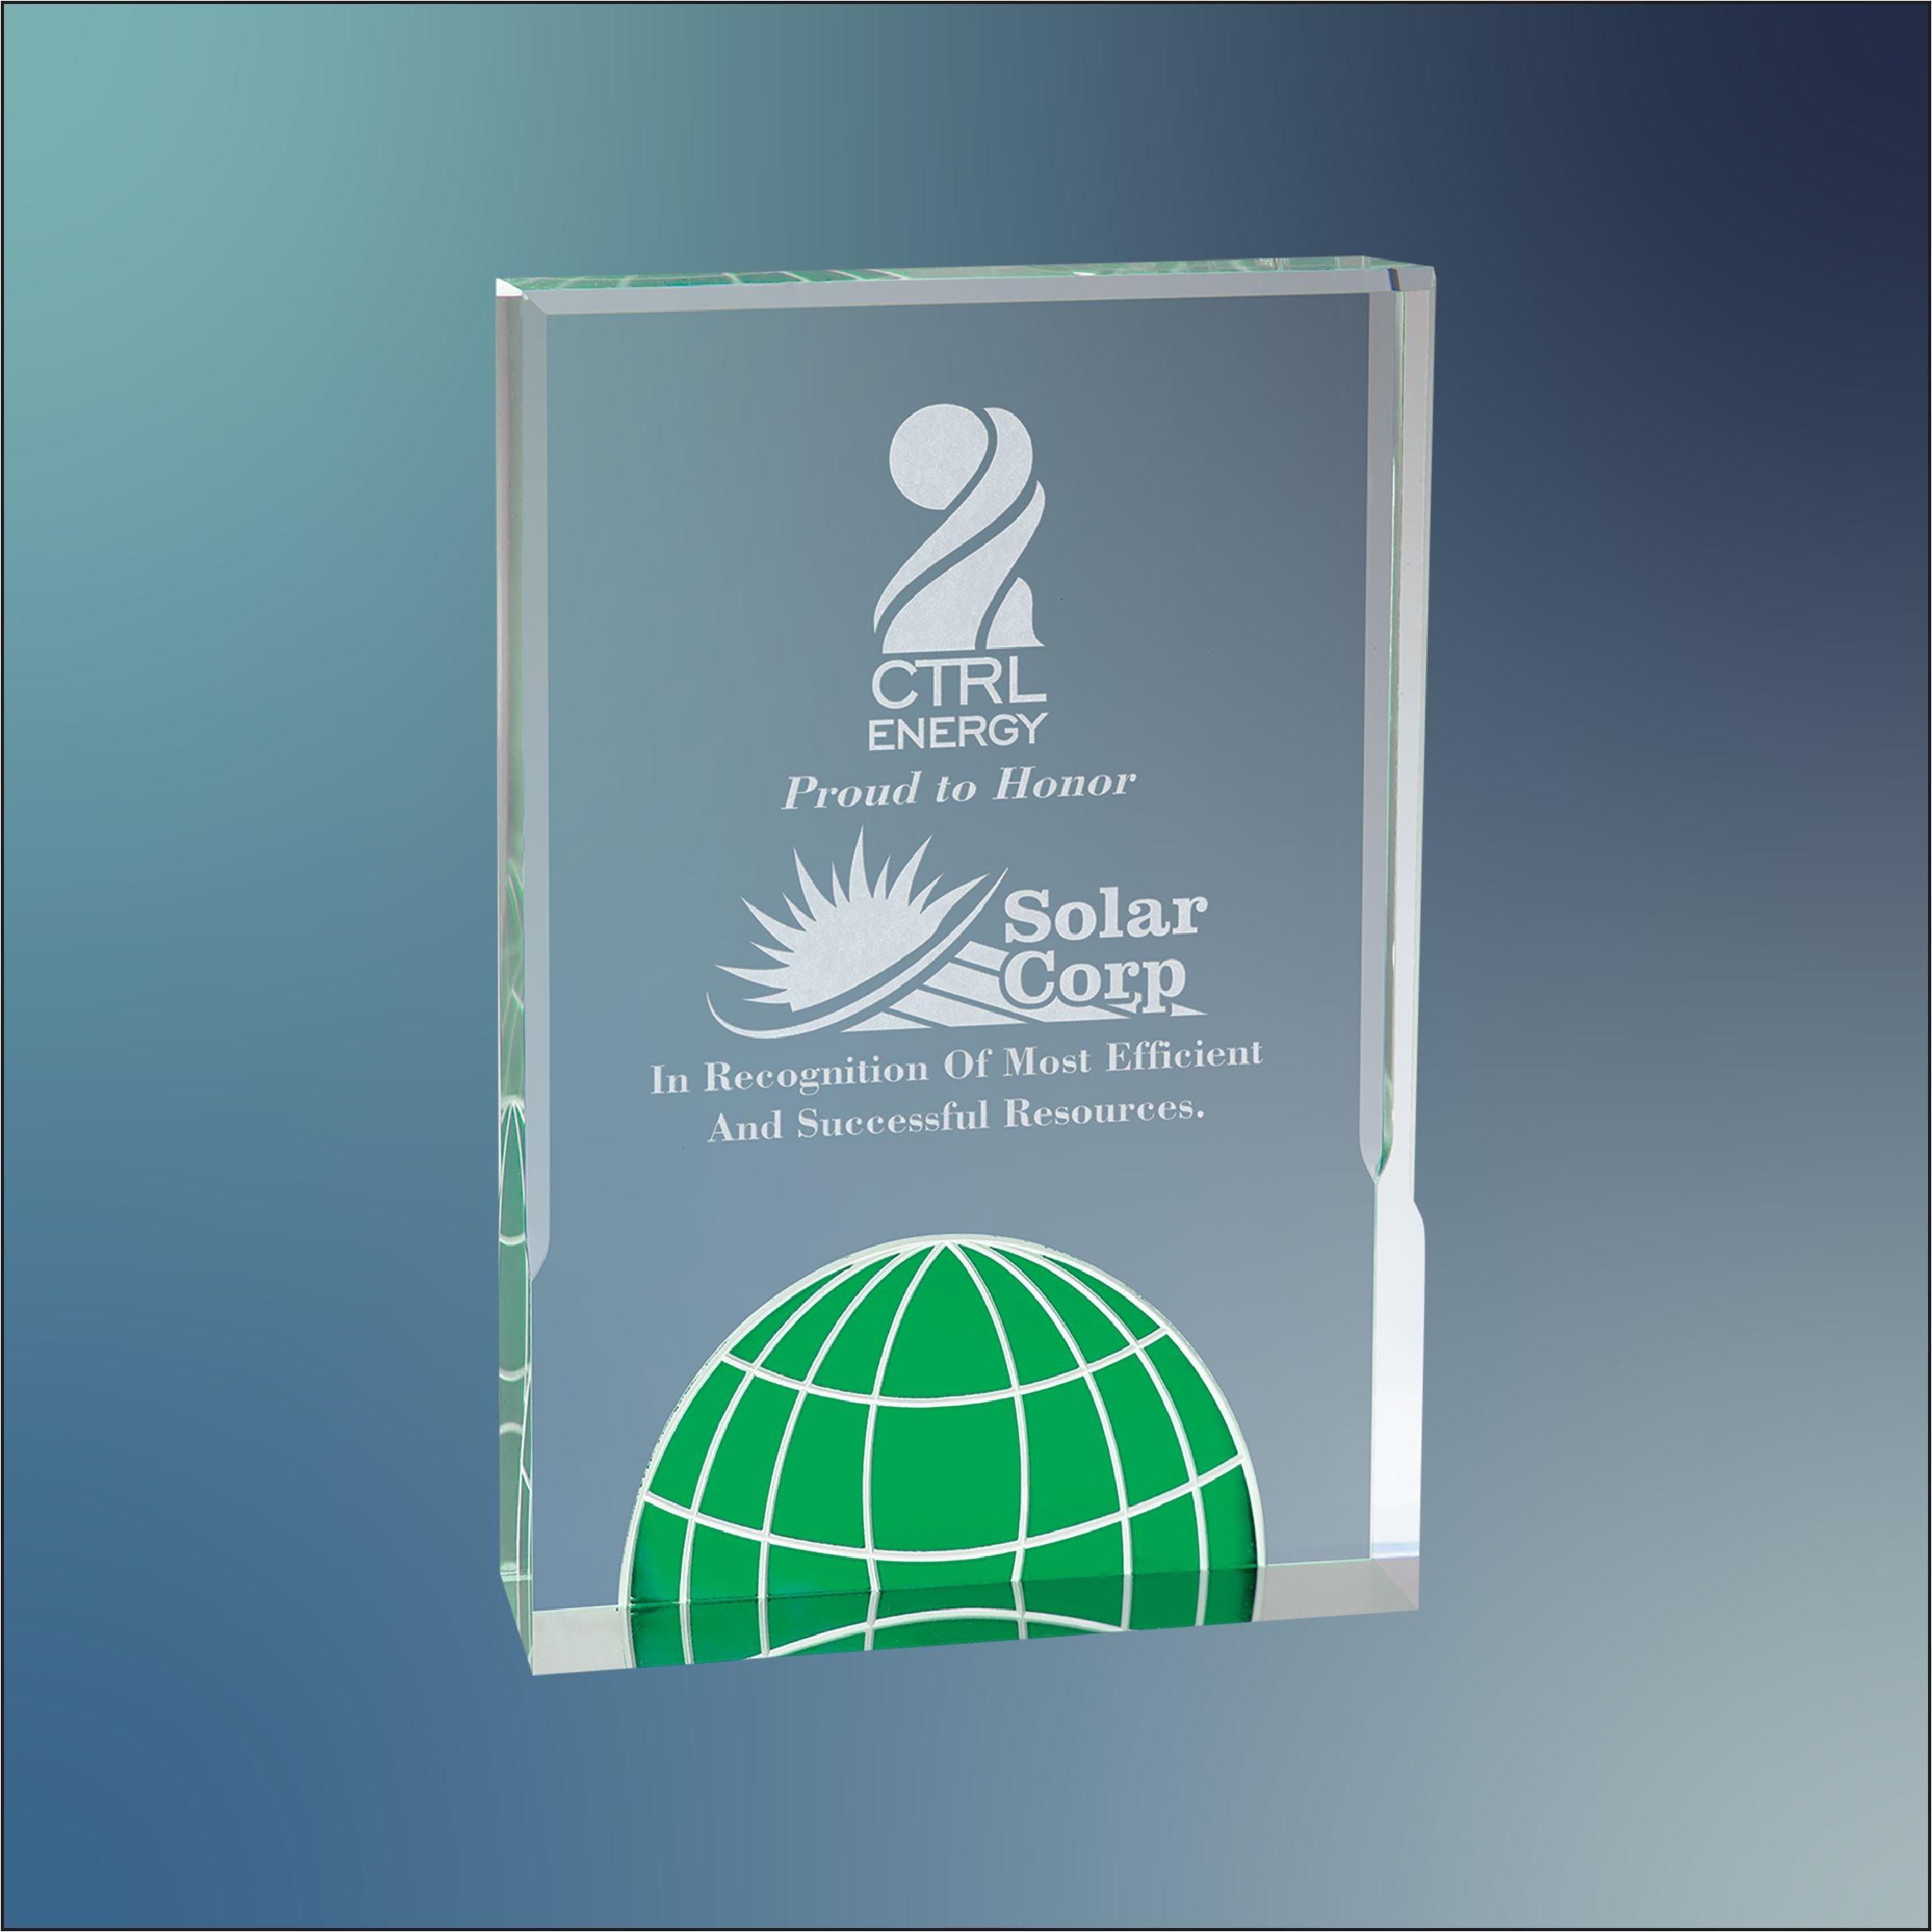 Globe Acrylic Award - Craftworks NW, LLC